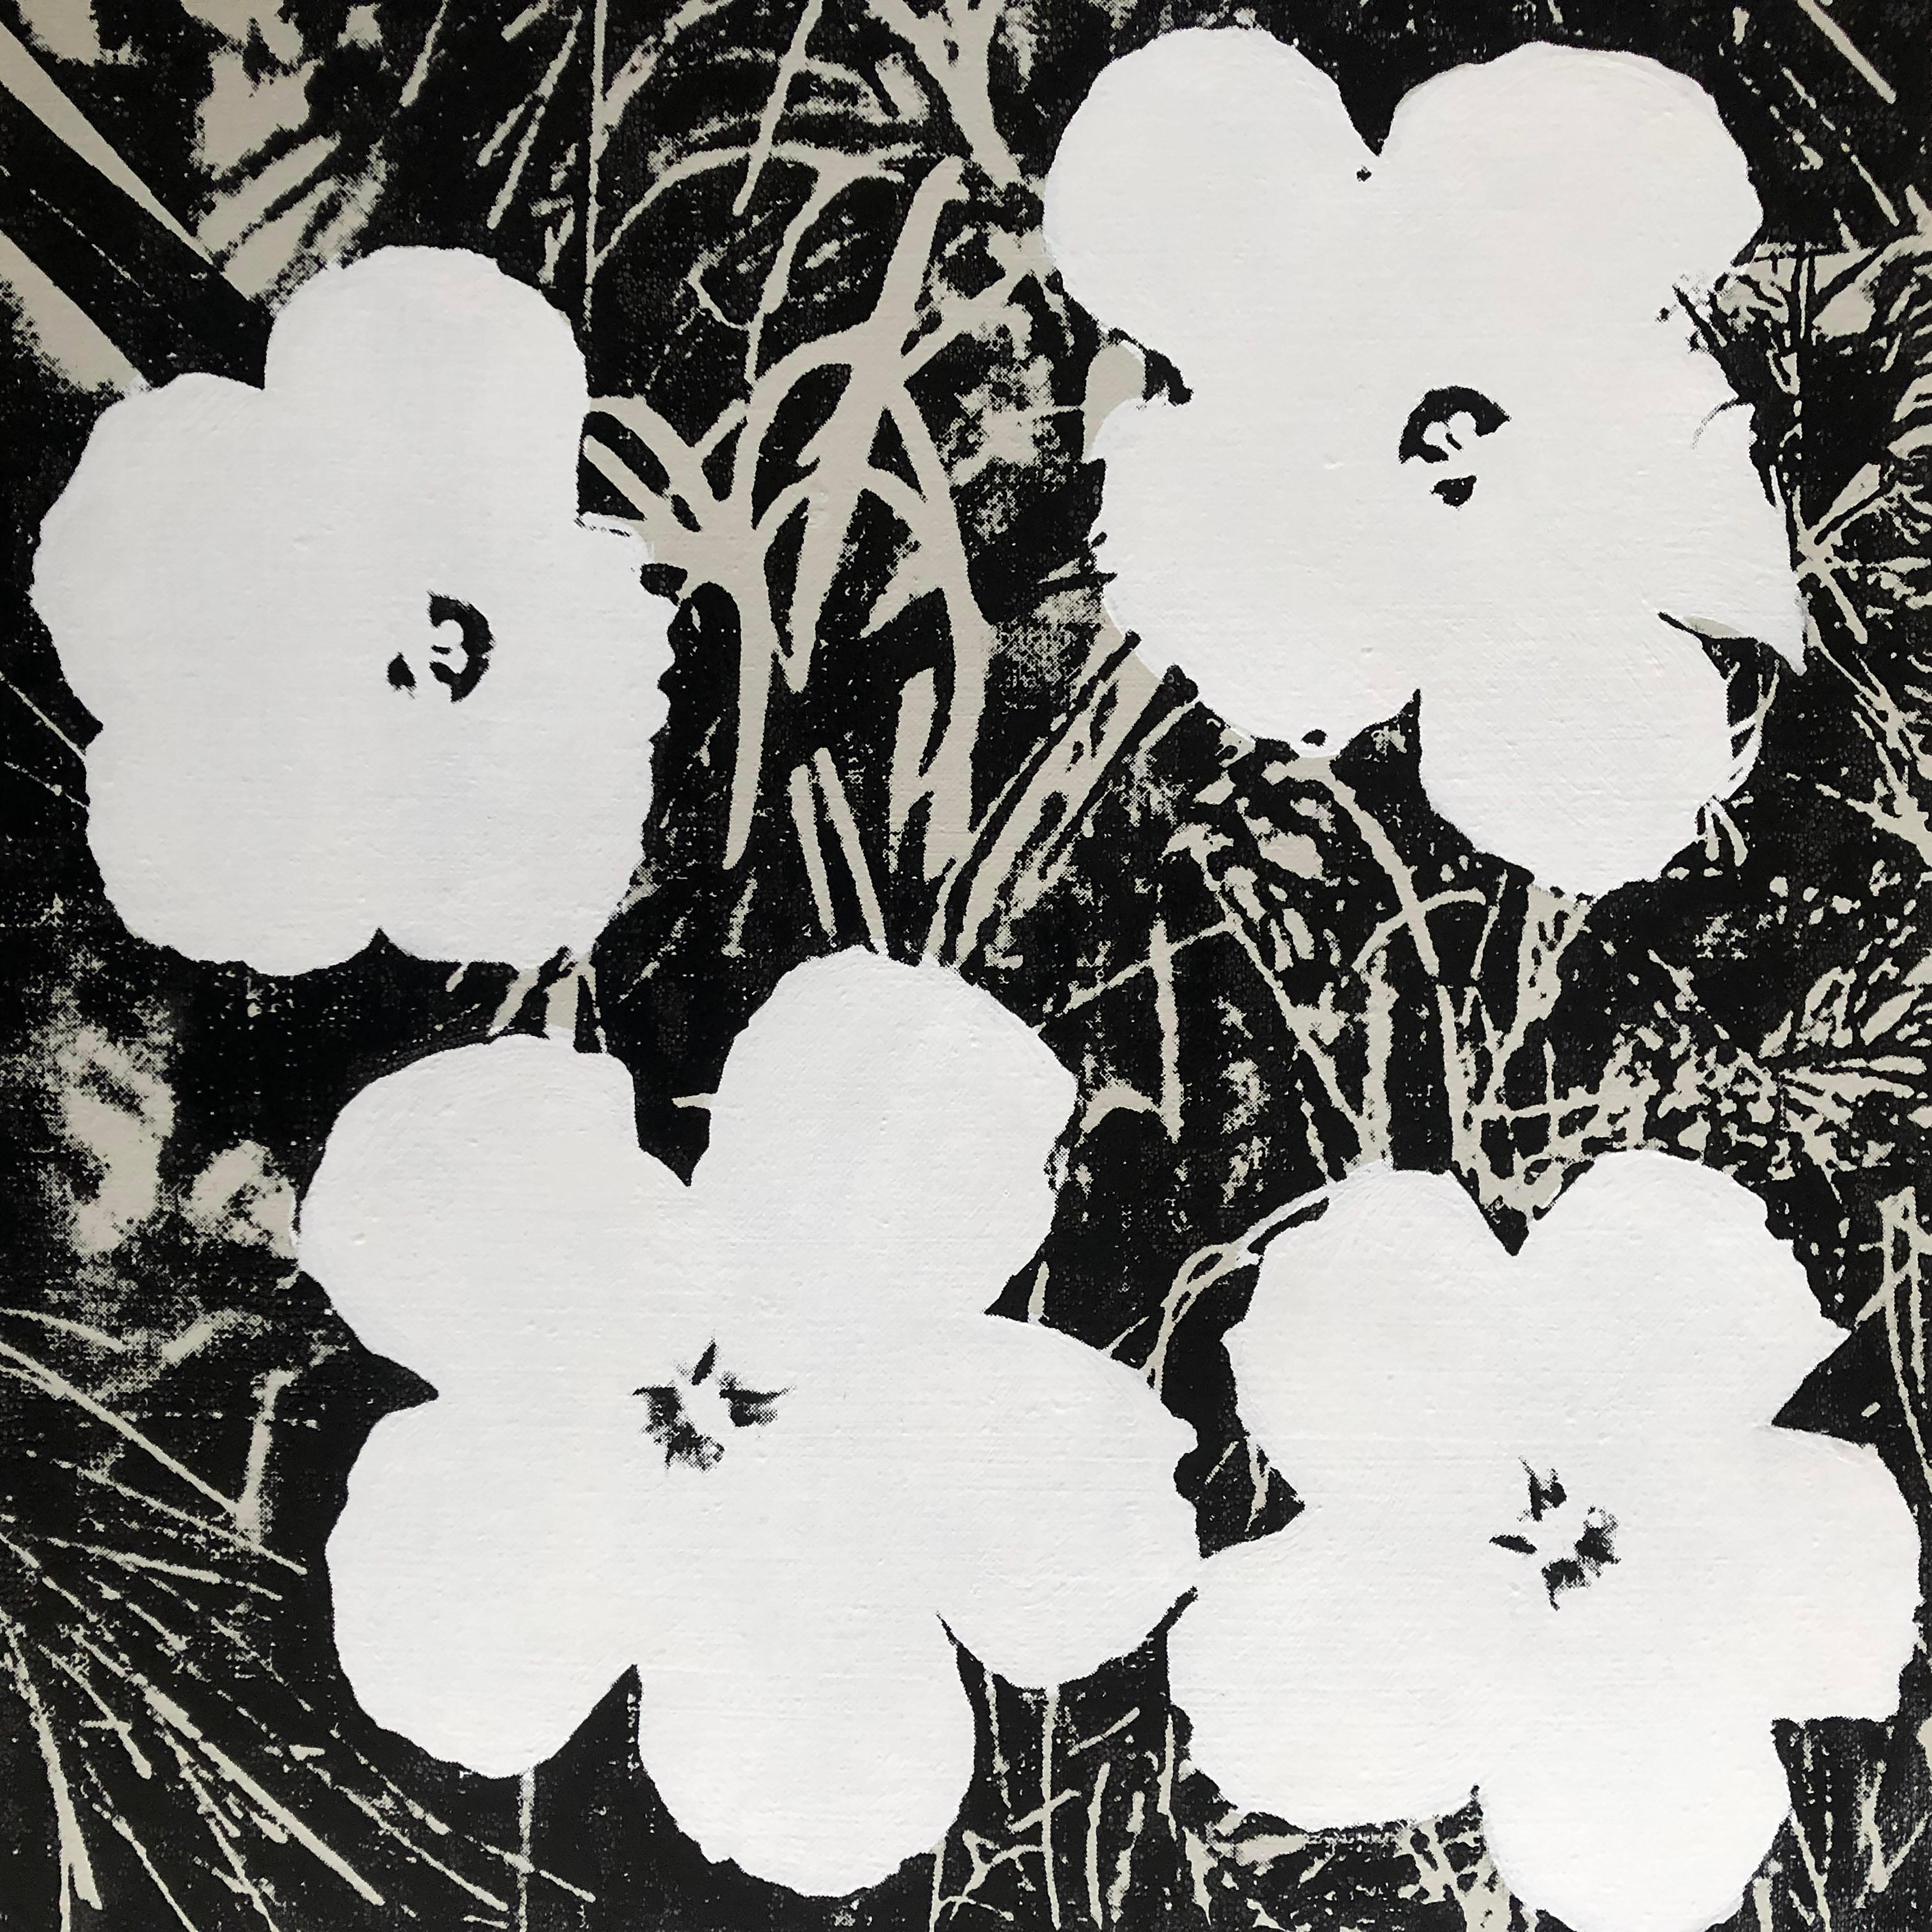 Verweigerte Warhol-Blumen, (weiß) Siebdruck Leinengemälde von Charles Lutz
Siebdruck und Acryl auf Leinen mit Verweigerungsstempel des Andy Warhol Art Authentication Board. 
14 x 14" Zoll 
2008

Lutz' Serie "Warhol Denied" aus dem Jahr 2007